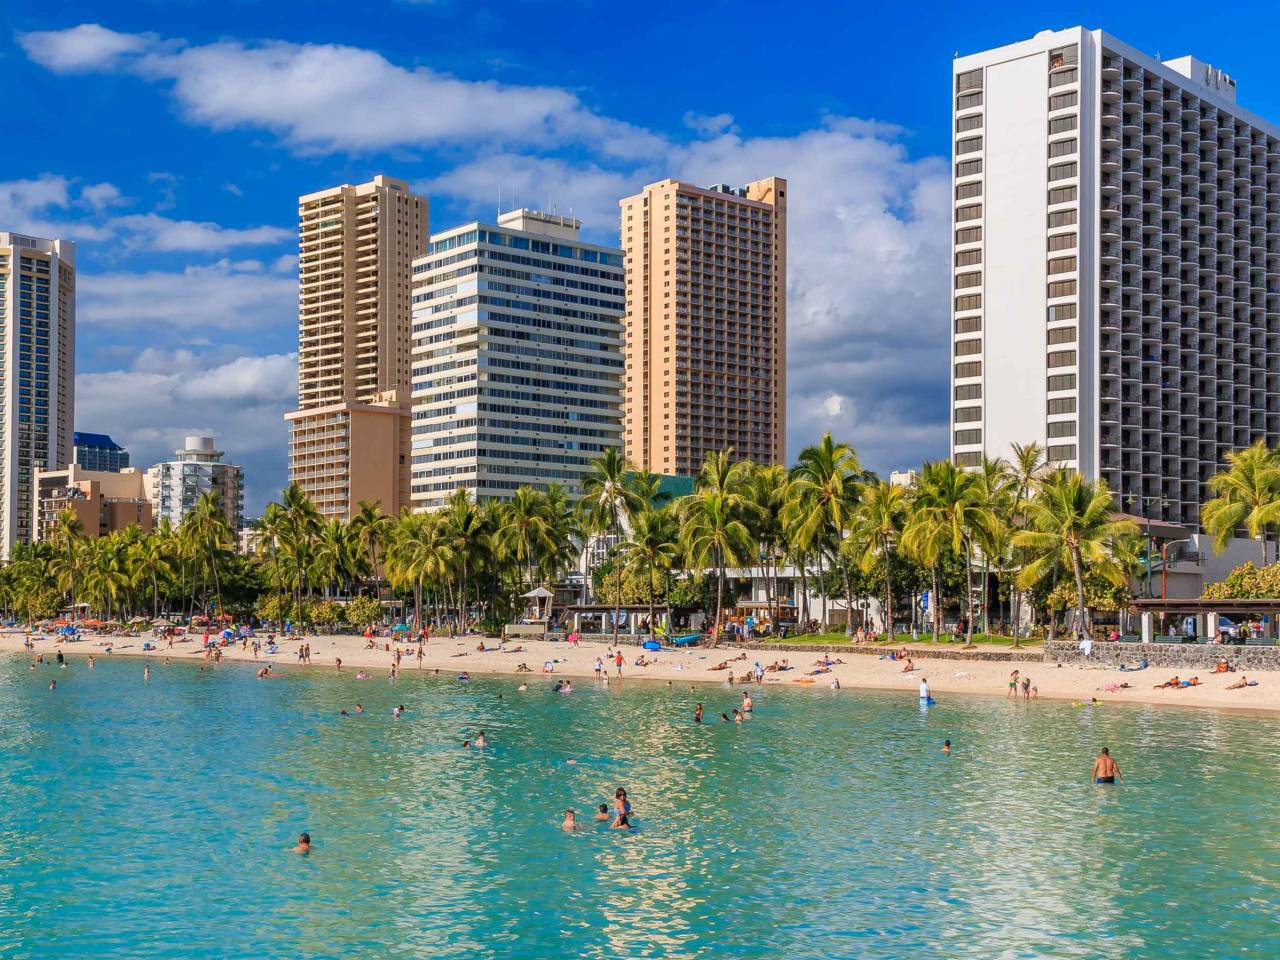 Waikiki Beach and Honolulu skyline in Hawaii, USA